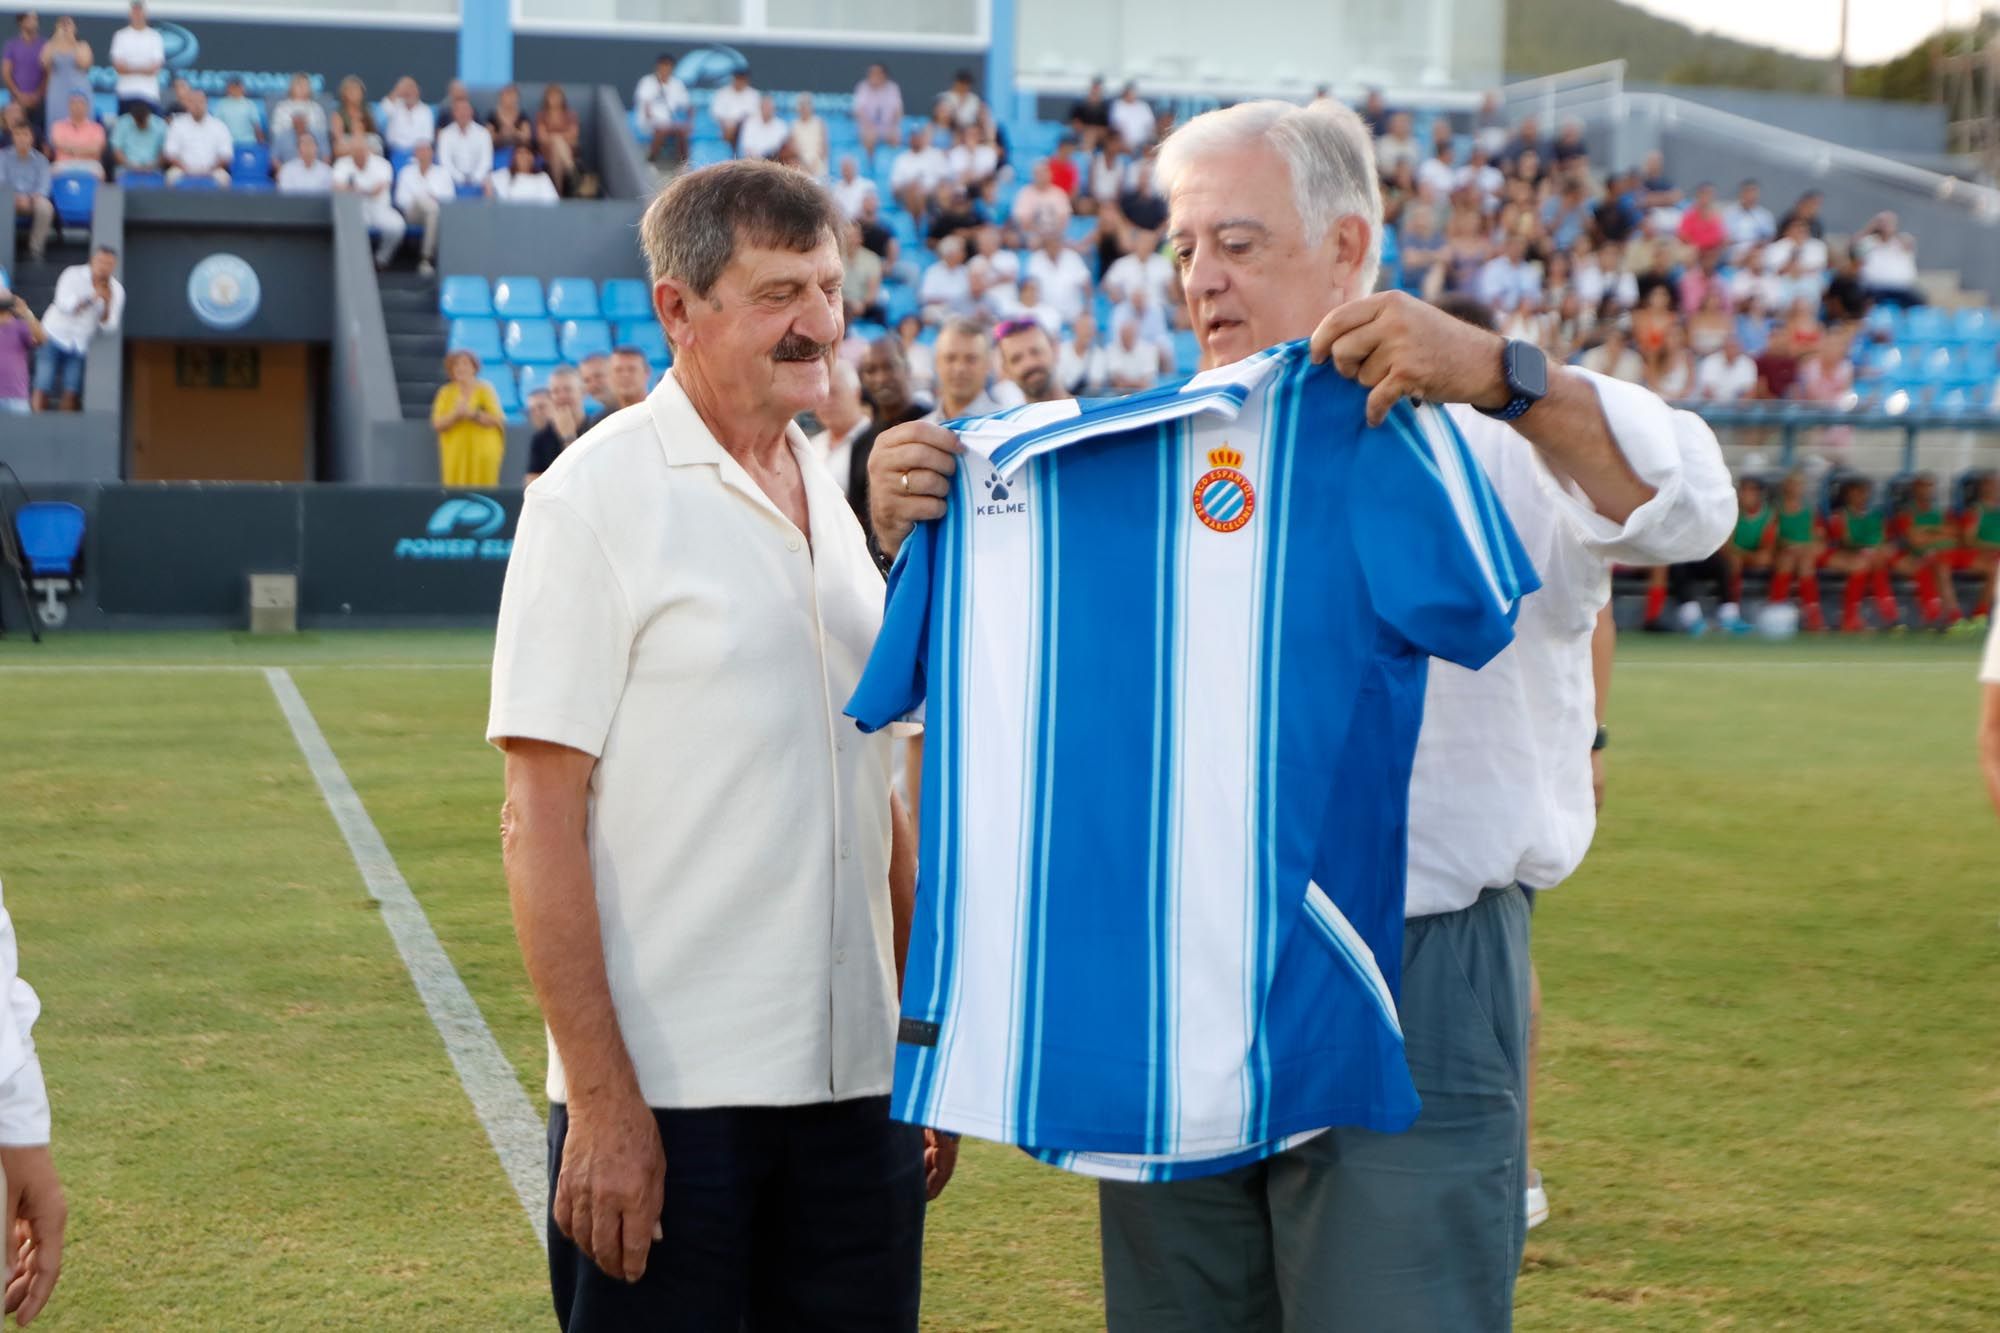 La leyenda de Toni Arabí, mito del fútbol de Ibiza, para siempre eterna en la puerta 4 de Can Misses